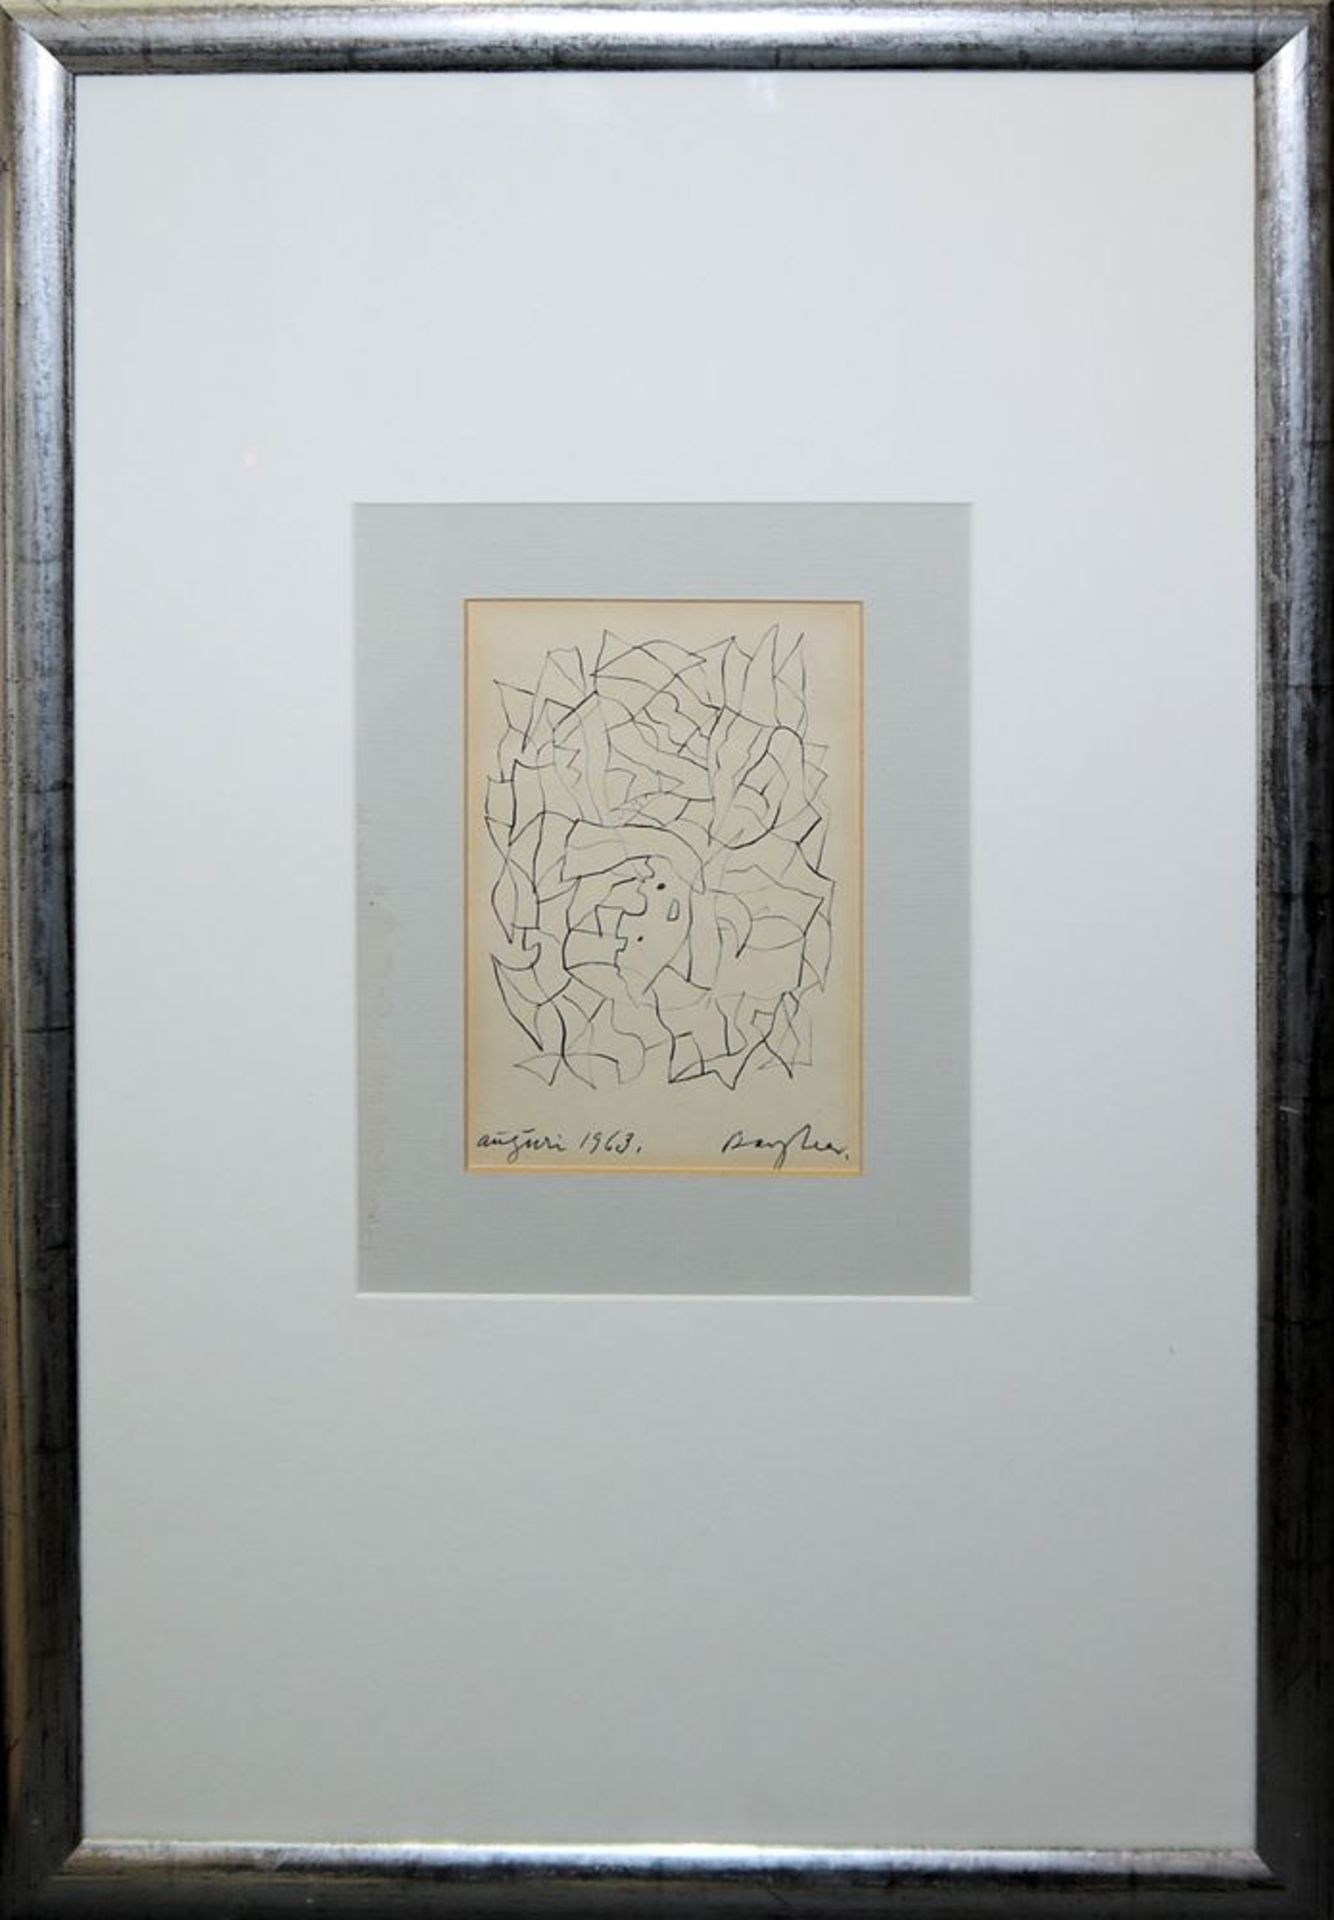 Eduard Bargheer, "Auguri 1963", signierte Zeichnung von 1962, gerahmt